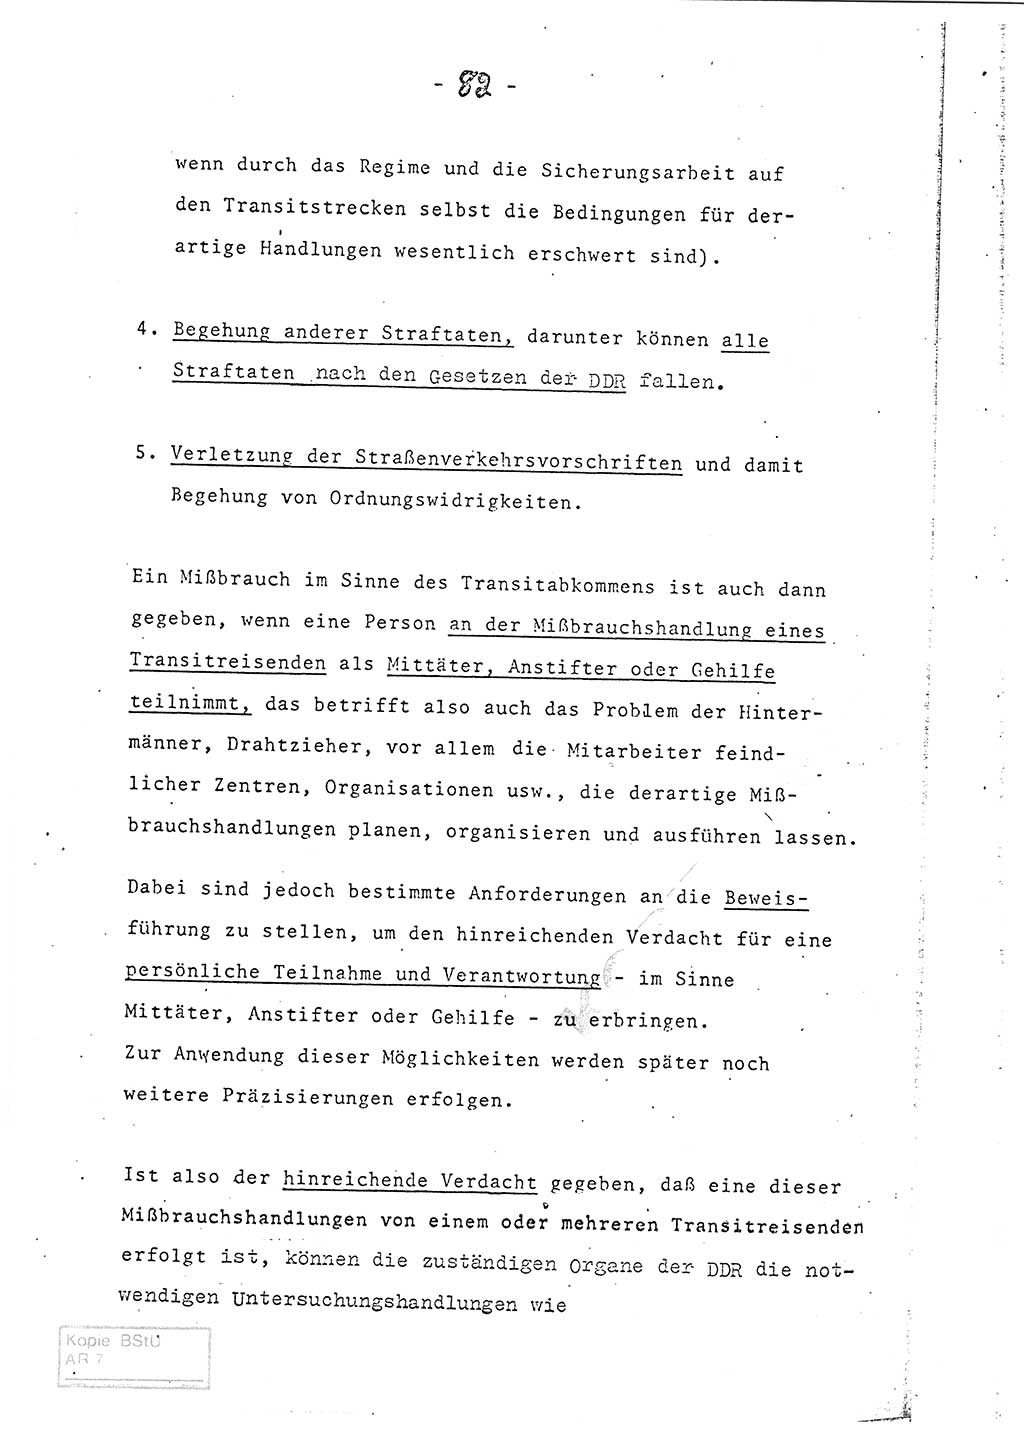 Referat (Entwurf) des Genossen Minister (Generaloberst Erich Mielke) auf der Dienstkonferenz 1972, Ministerium für Staatssicherheit (MfS) [Deutsche Demokratische Republik (DDR)], Der Minister, Geheime Verschlußsache (GVS) 008-150/72, Berlin 25.2.1972, Seite 82 (Ref. Entw. DK MfS DDR Min. GVS 008-150/72 1972, S. 82)